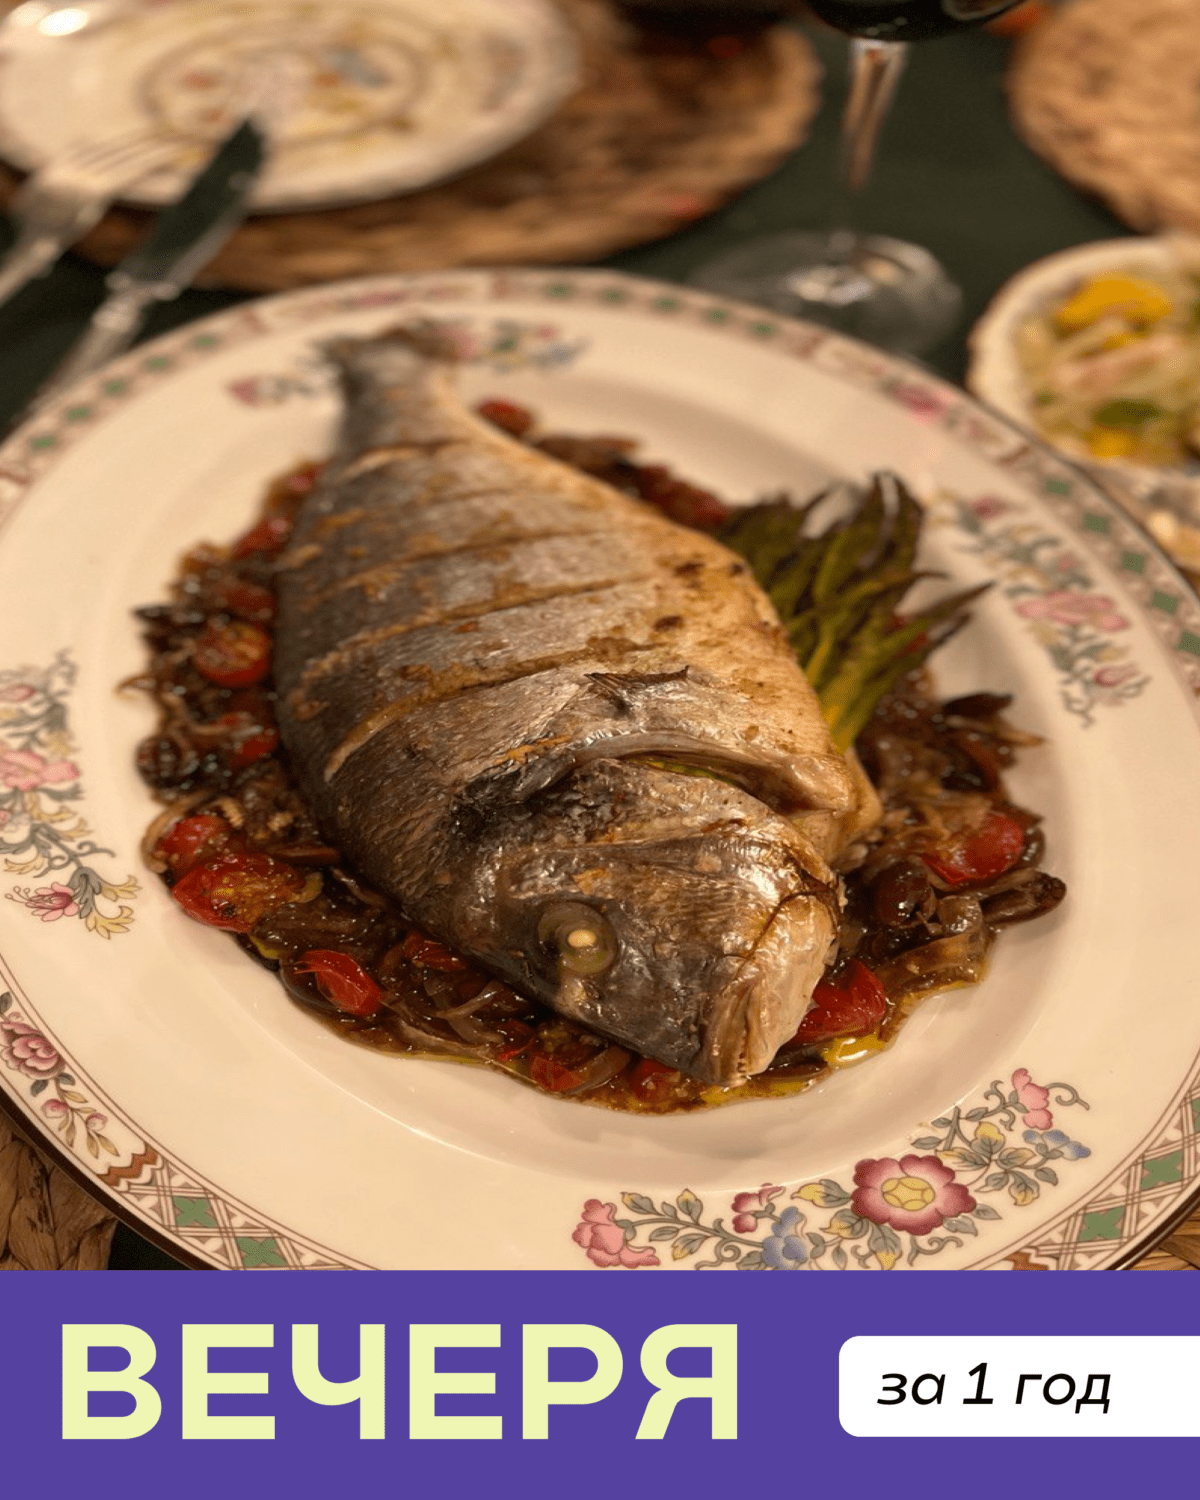 Вечеря за 1 год: рецепт запеченої риби від шеф-кухаря Юрія Ковриженка